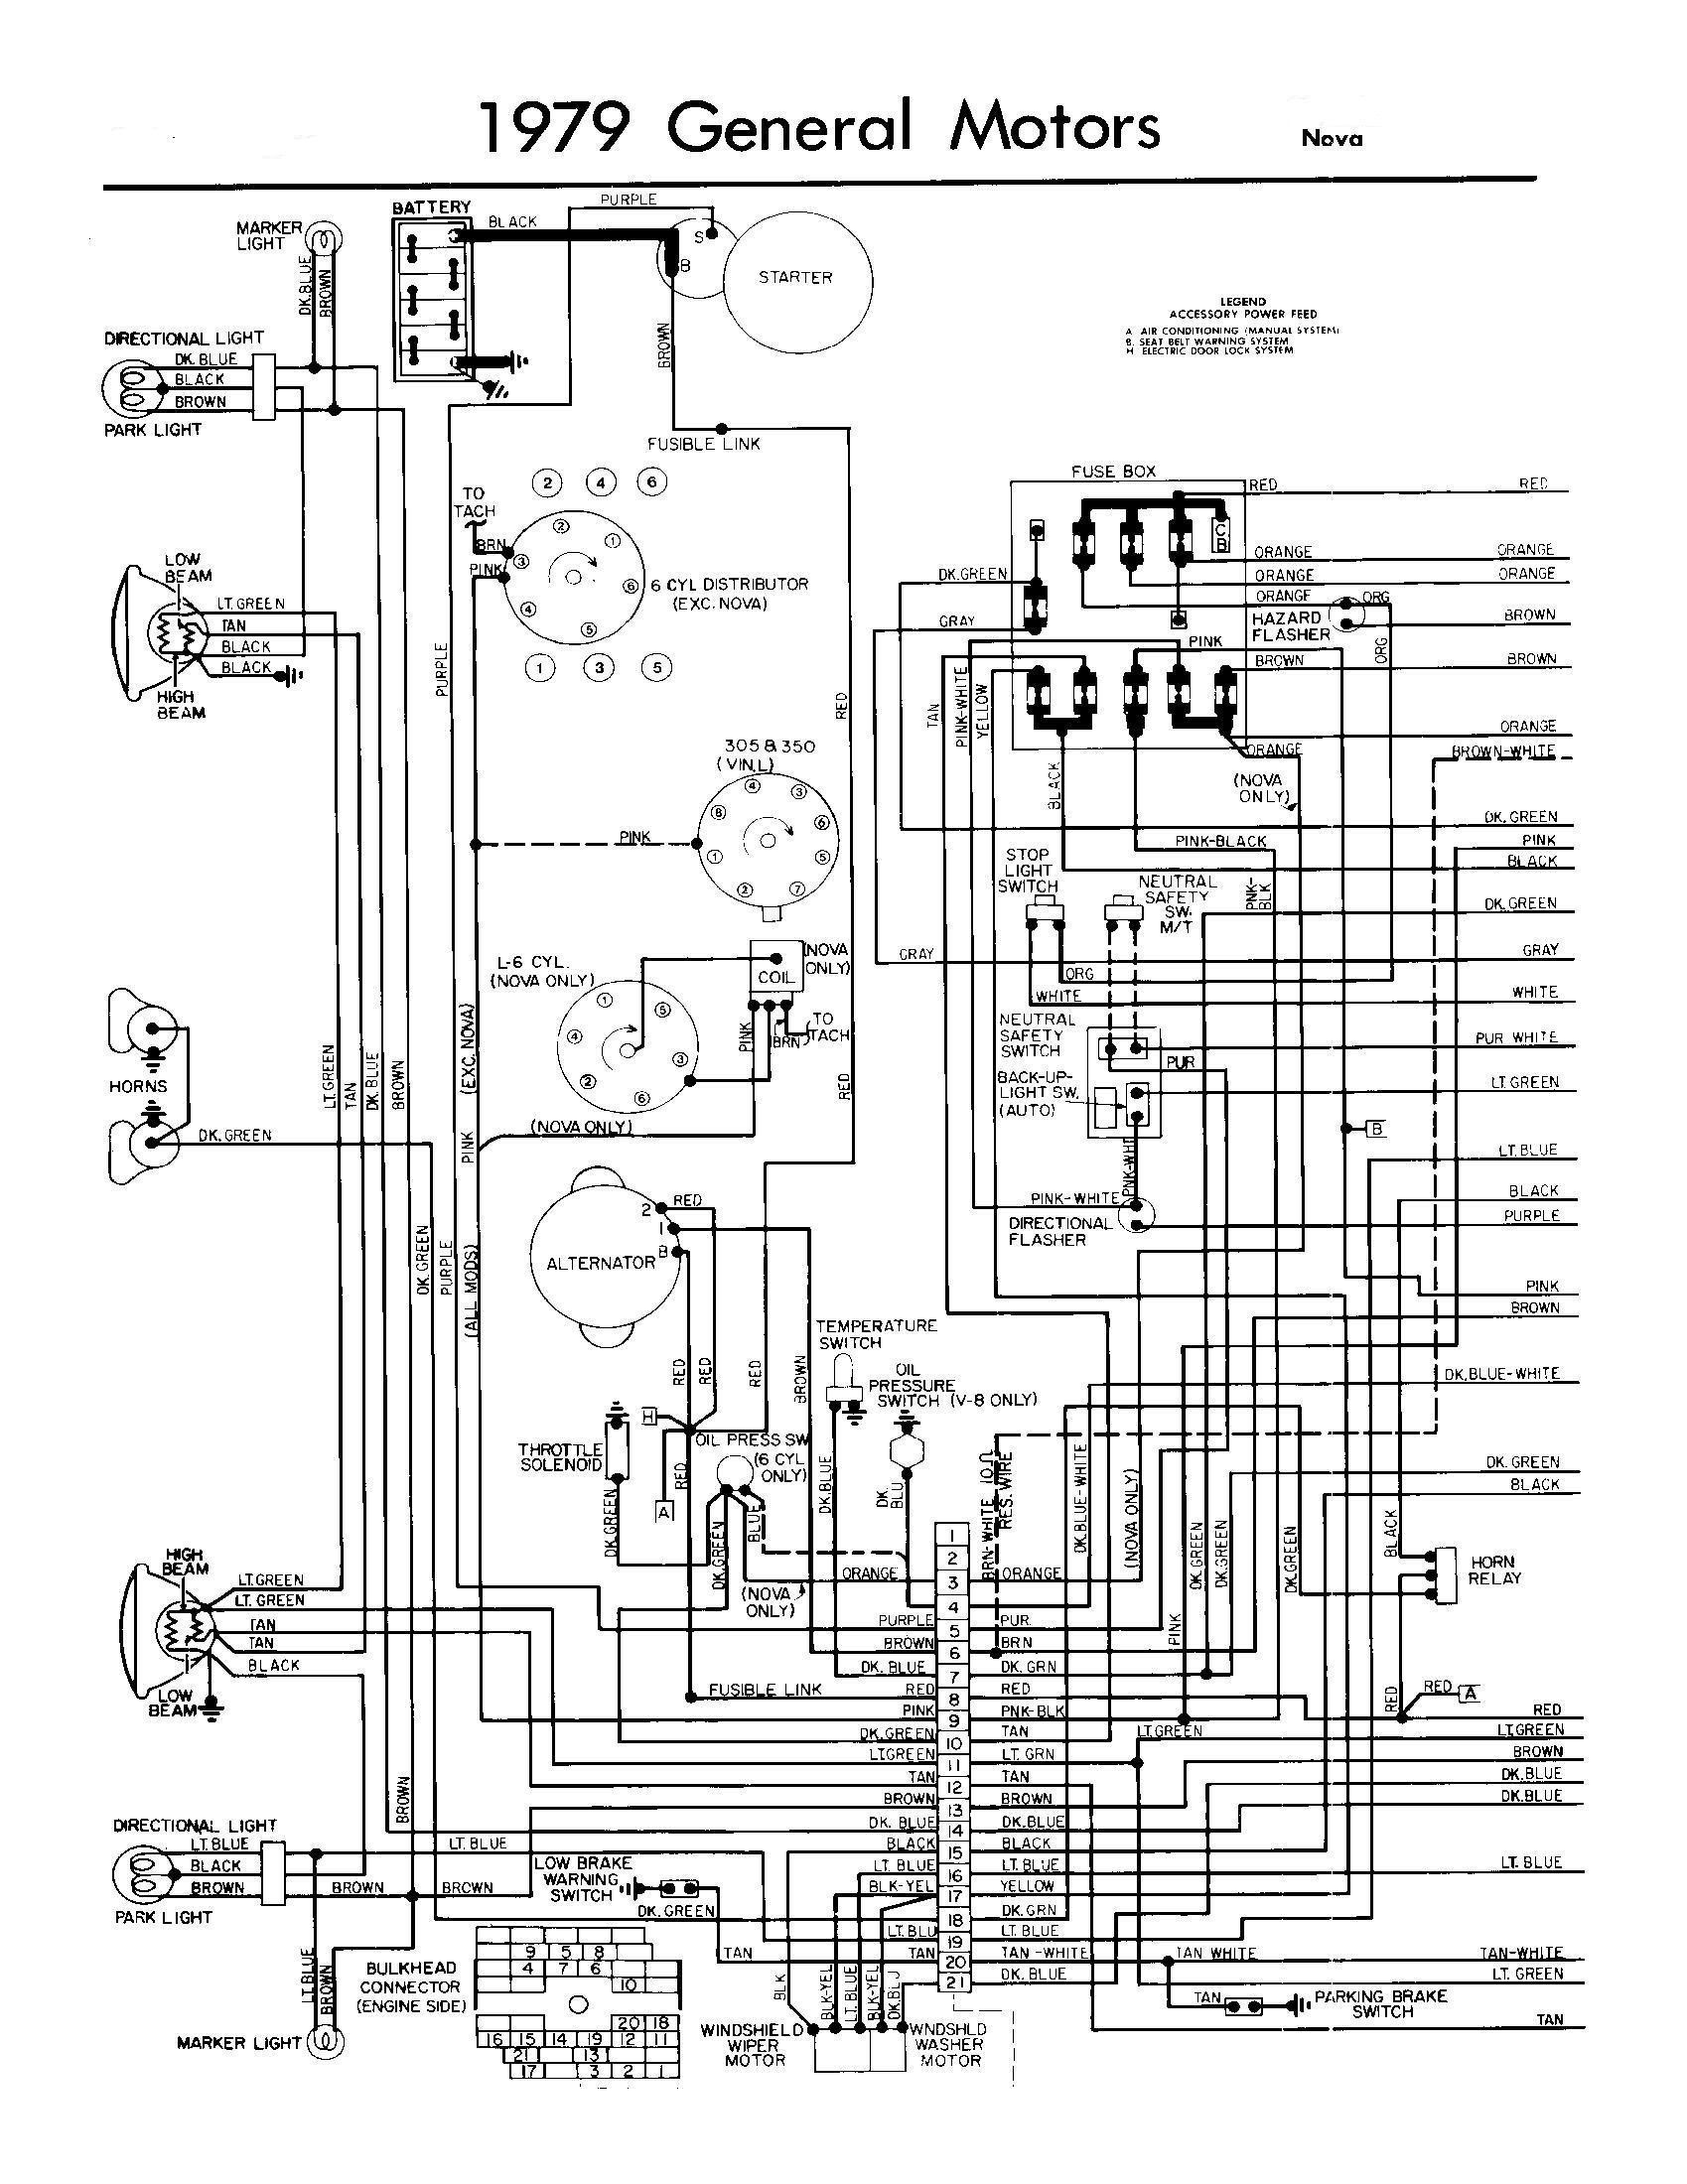 1979 Chevy Truck Wiring Diagram All Generation Wiring Schematics Chevy Nova forum